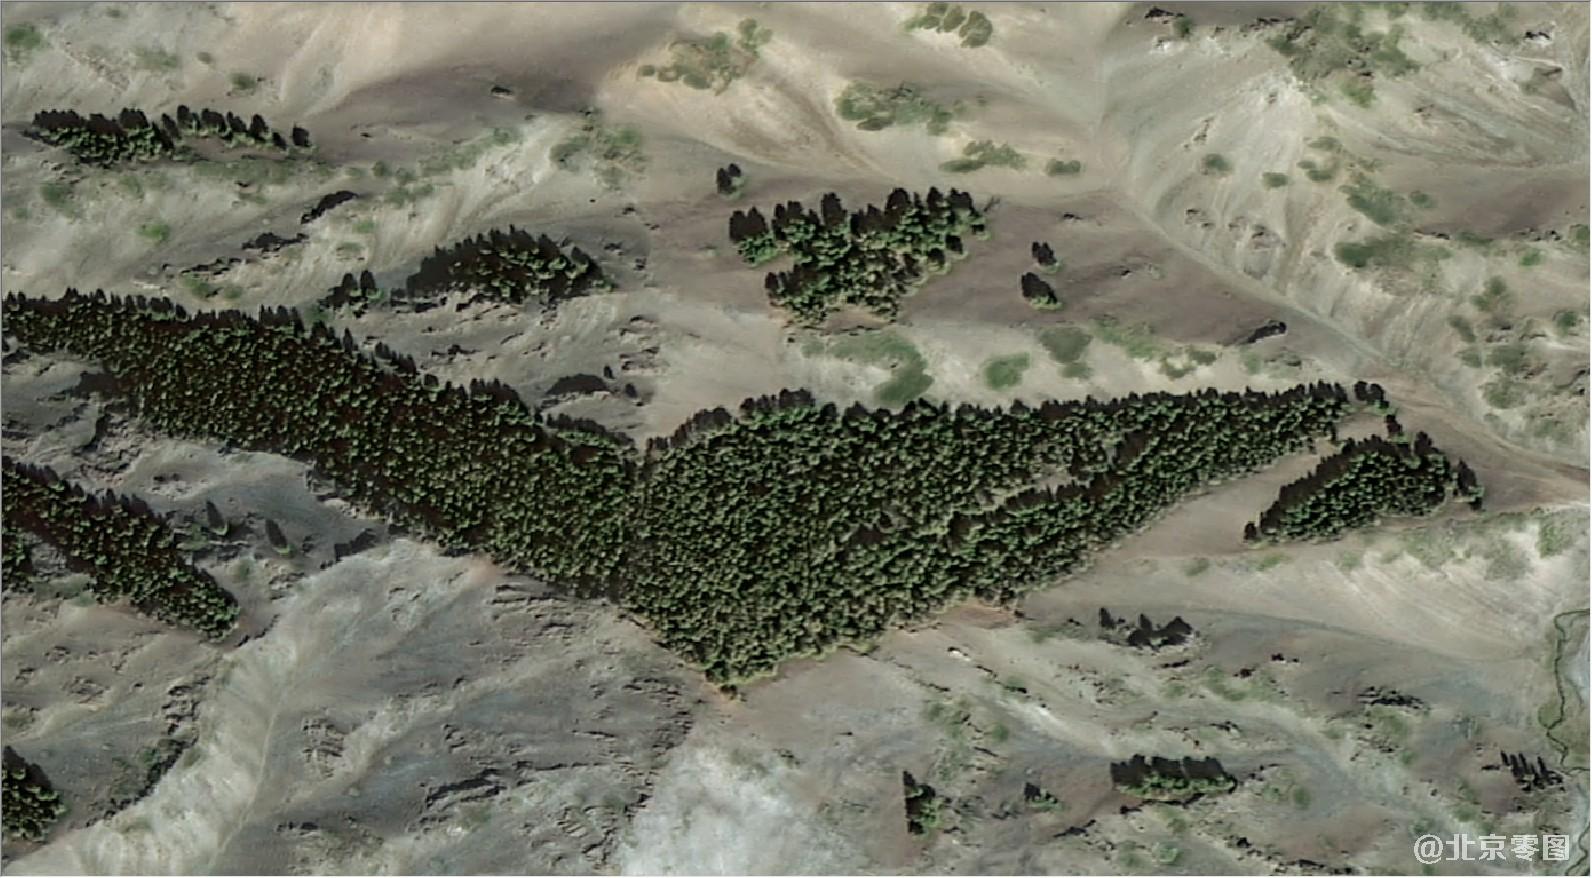 高分二号卫星拍摄的卫星图-v字型林木